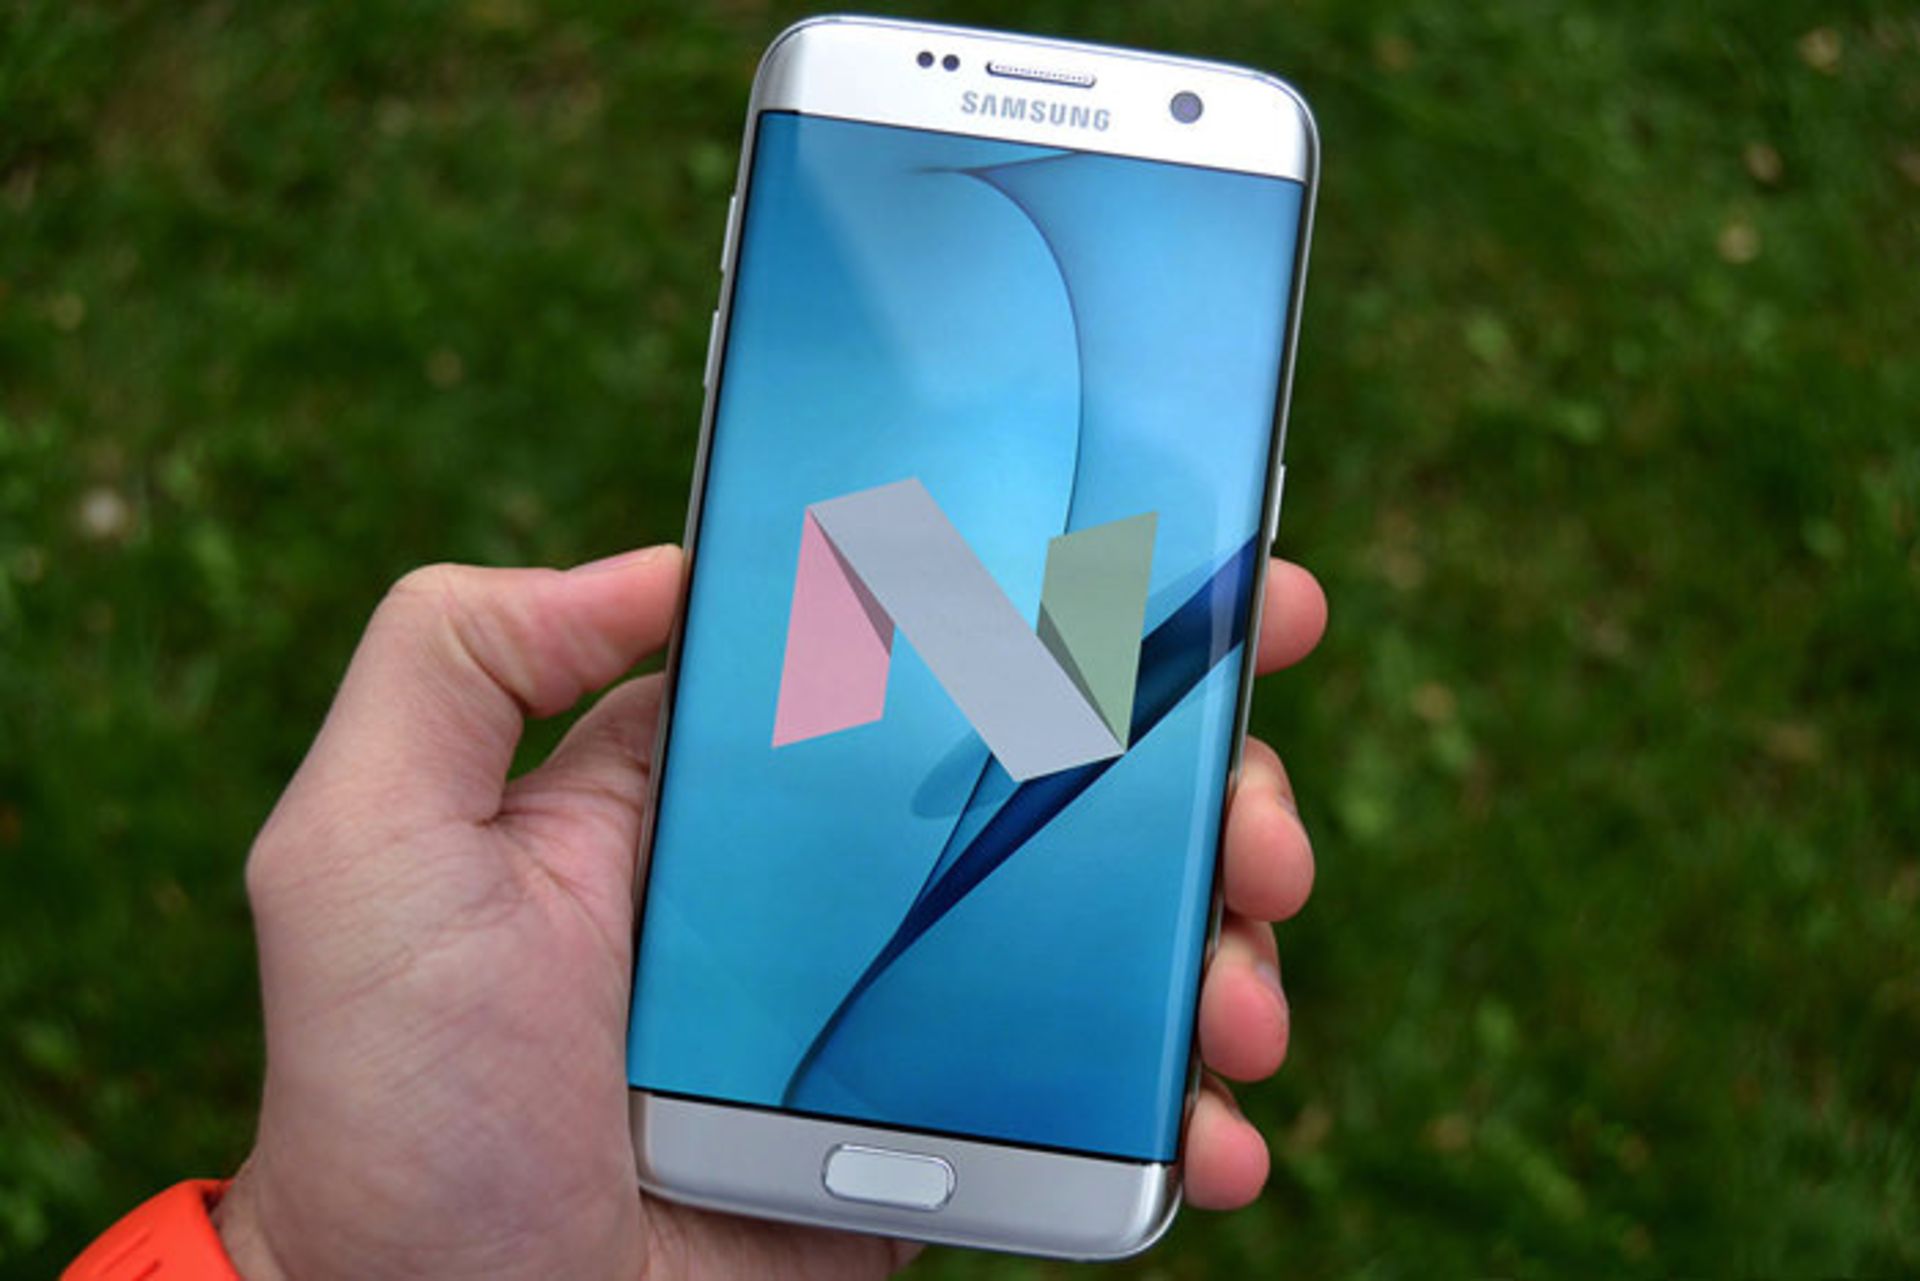 مرجع متخصصين ايران نماي جلو از گلكسي اس 7 / Galaxy S7 Edge سامسونگ / Samsung در دست متخصص